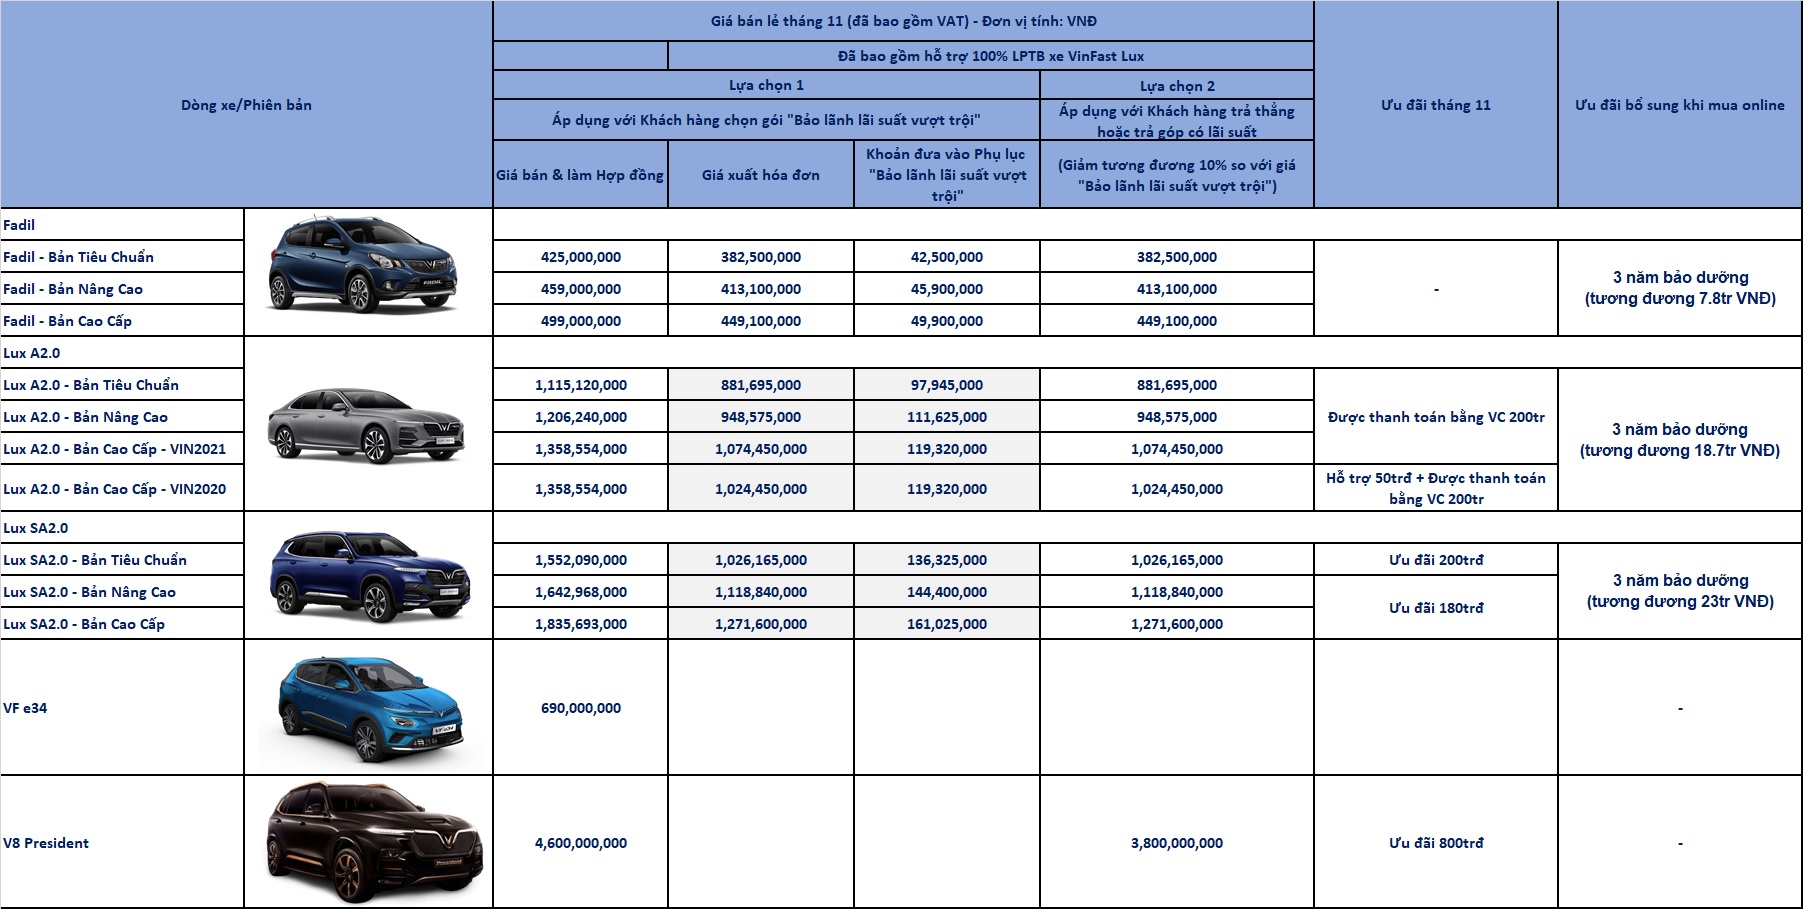 Giá xe VinFast LUX SA2.0 2020 tại Việt Nam (giá tháng 11/2021)